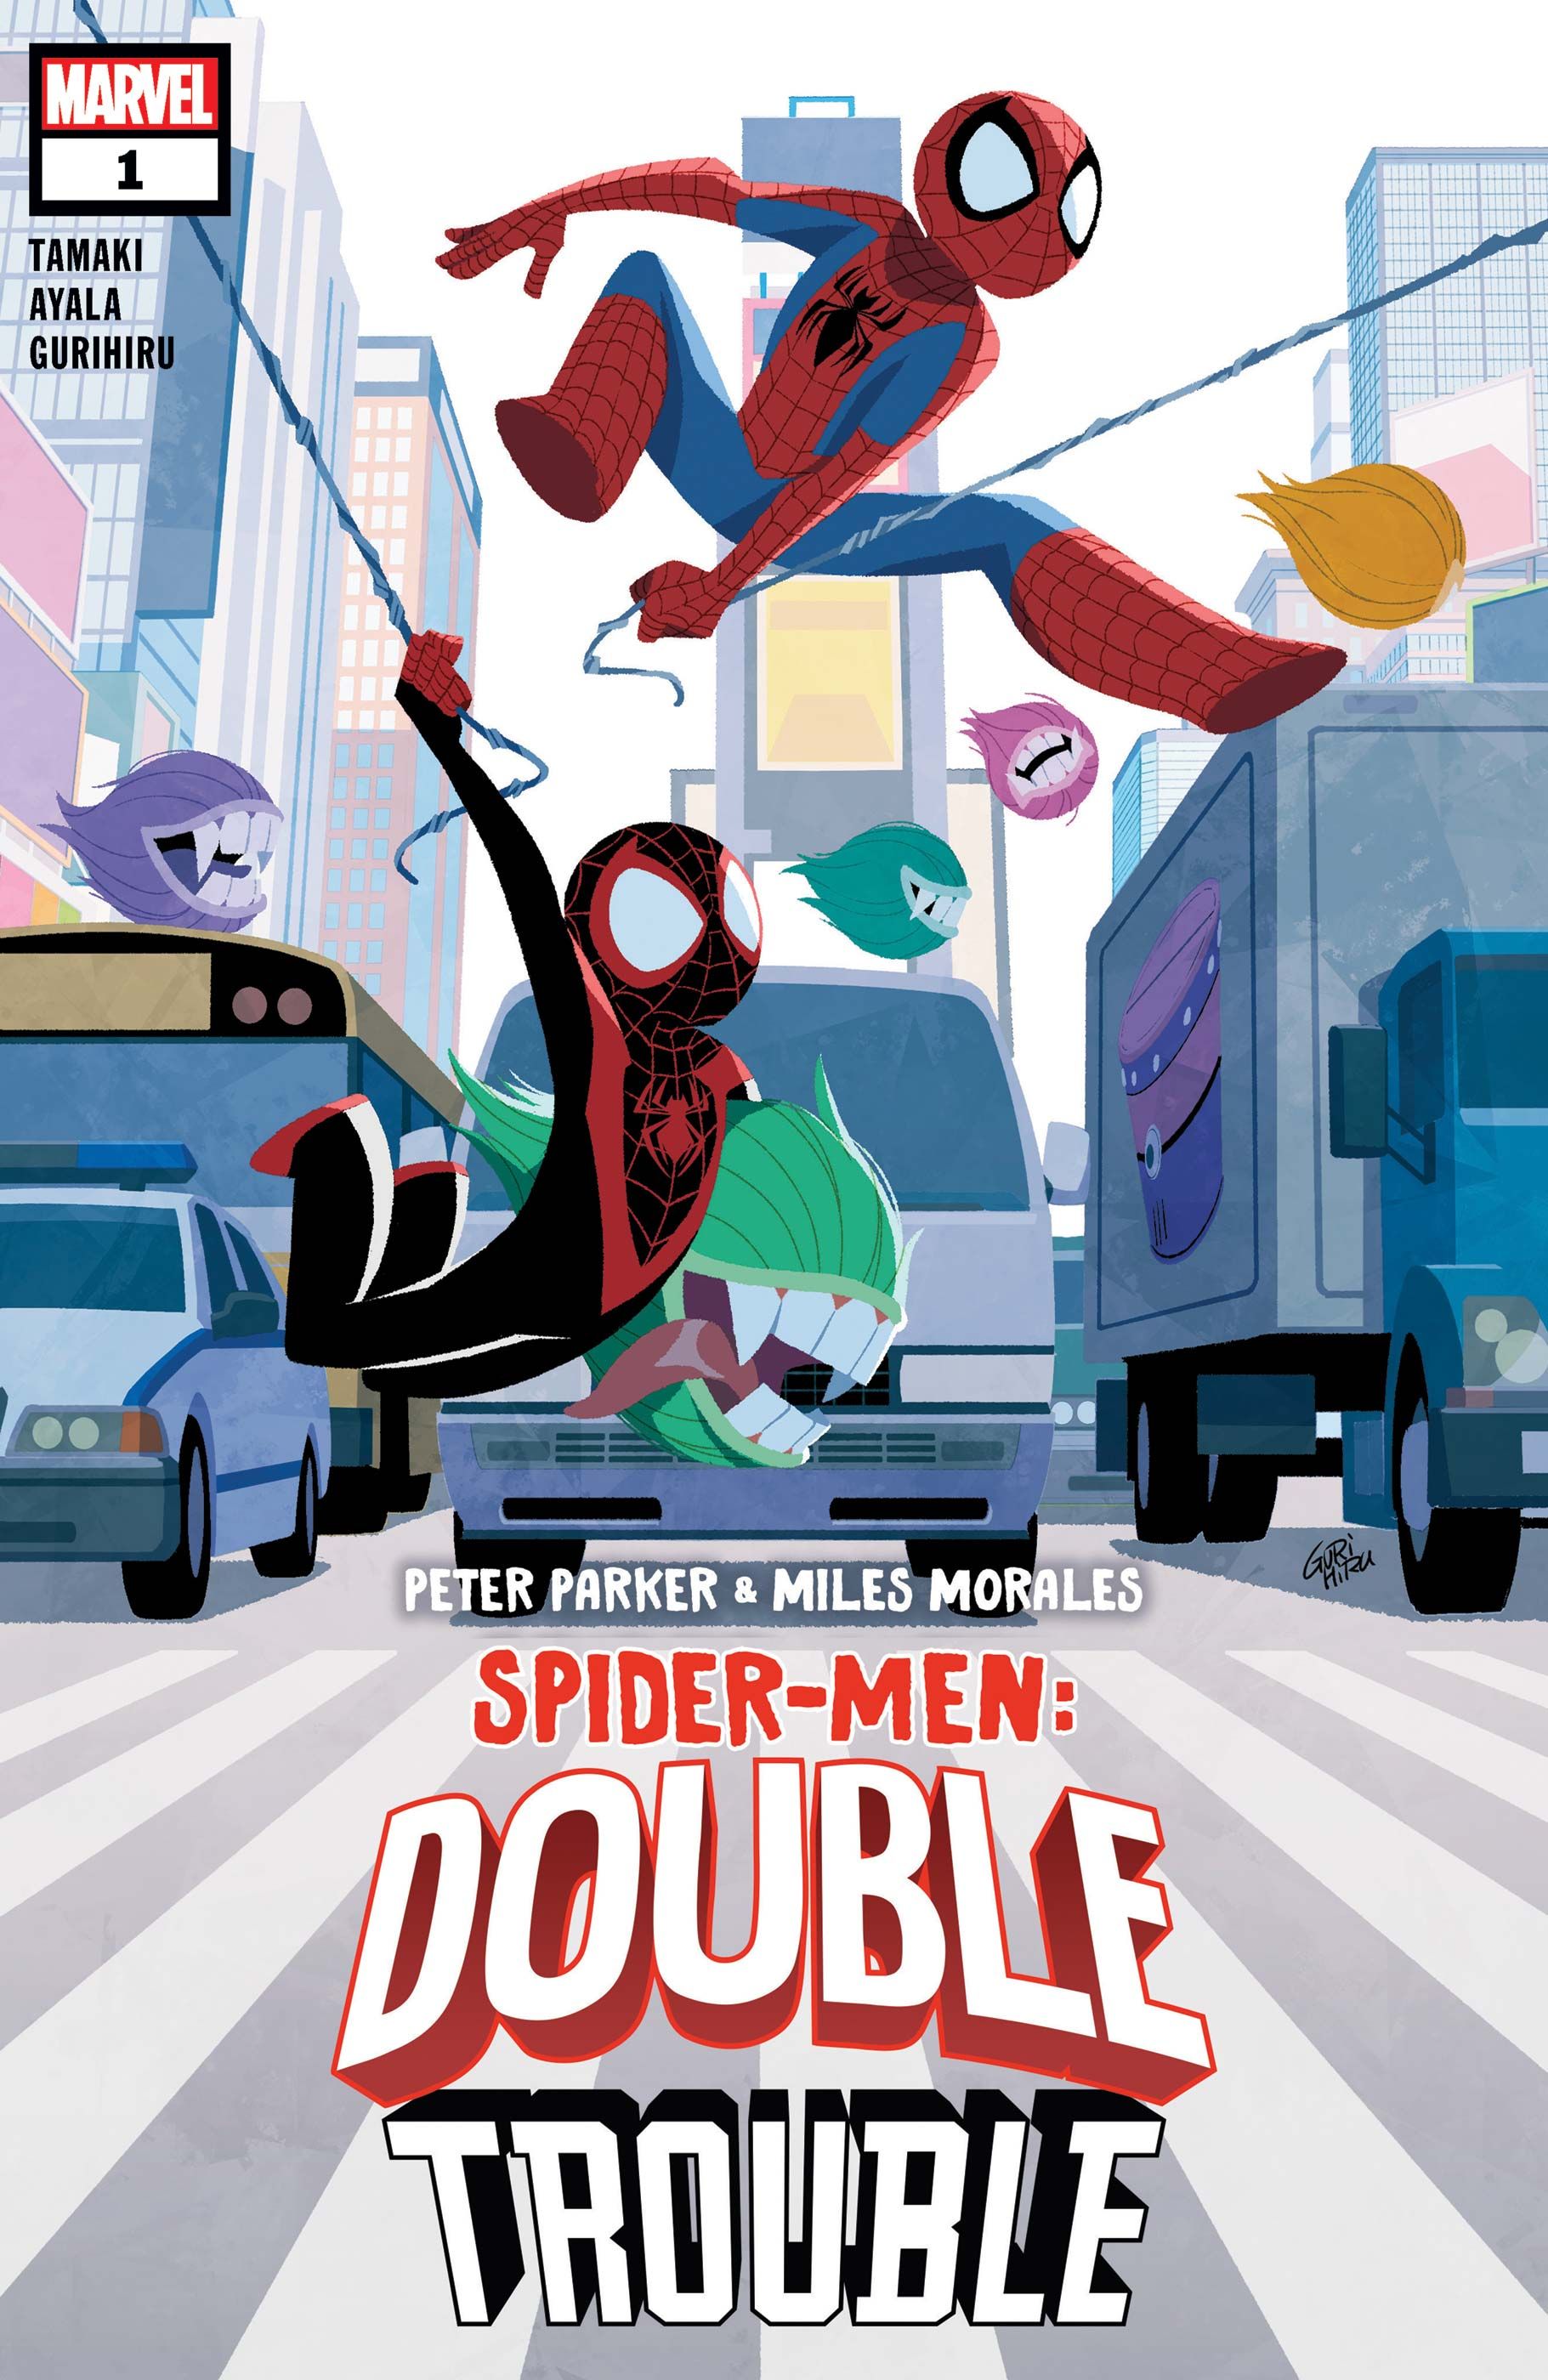 Peter Parker & Miles Morales Spider-Men Double Trouble #1 Cover